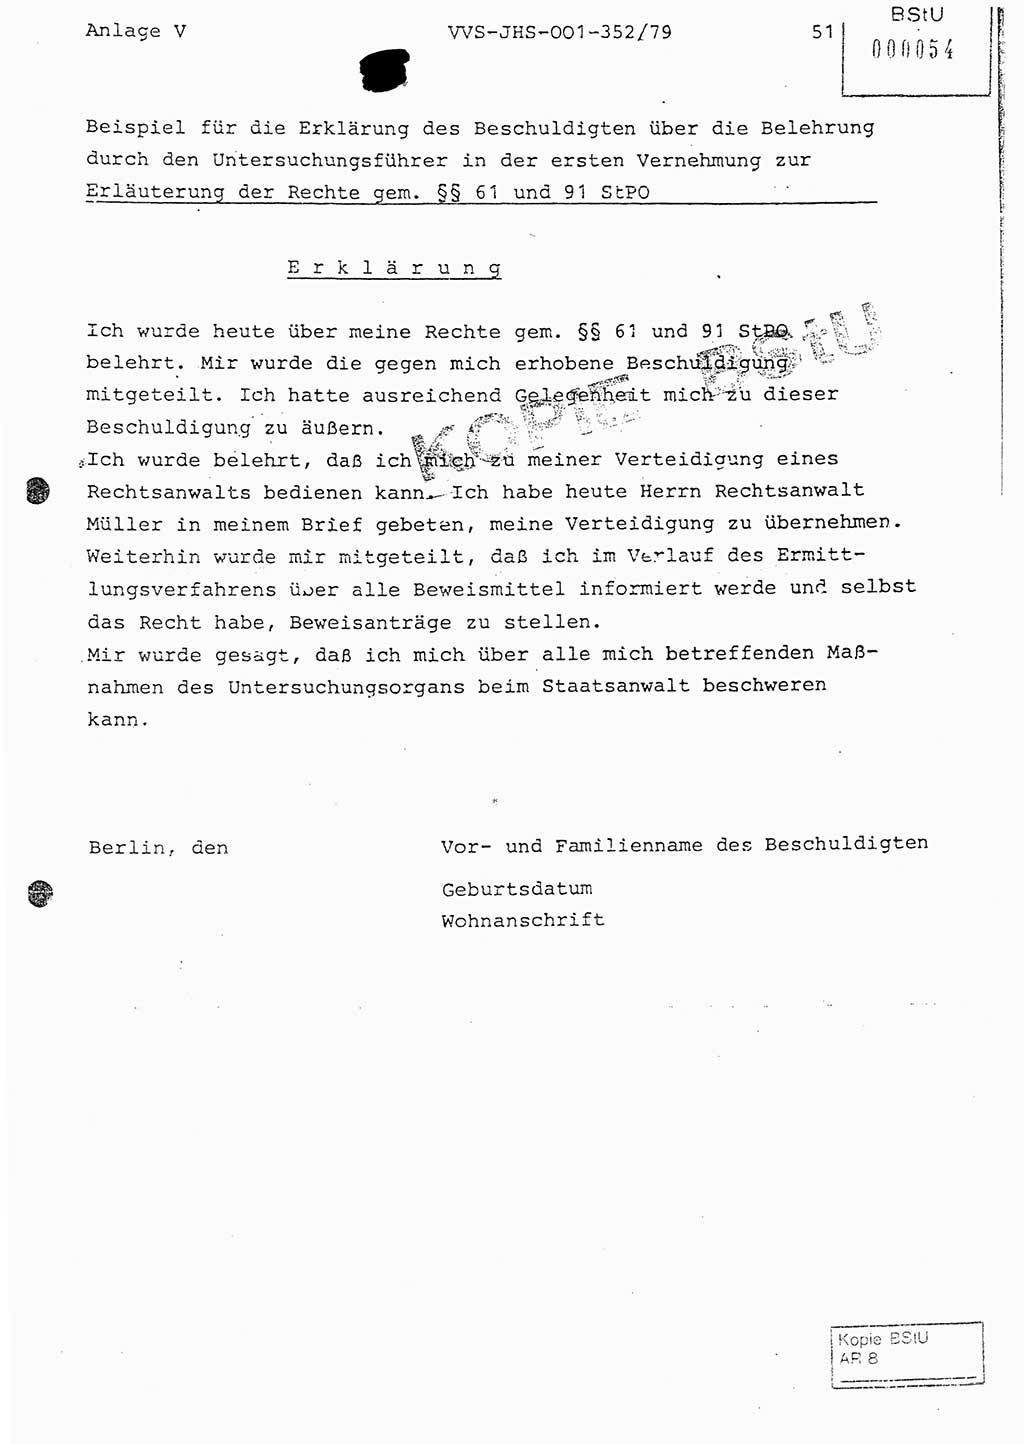 Diplomarbeit Hauptmann Peter Wittum (BV Bln. Abt. HA Ⅸ), Ministerium für Staatssicherheit (MfS) [Deutsche Demokratische Republik (DDR)], Juristische Hochschule (JHS), Vertrauliche Verschlußsache (VVS) o001-352/79, Potsdam 1979, Seite 51 (Dipl.-Arb. MfS DDR JHS VVS o001-352/79 1979, S. 51)